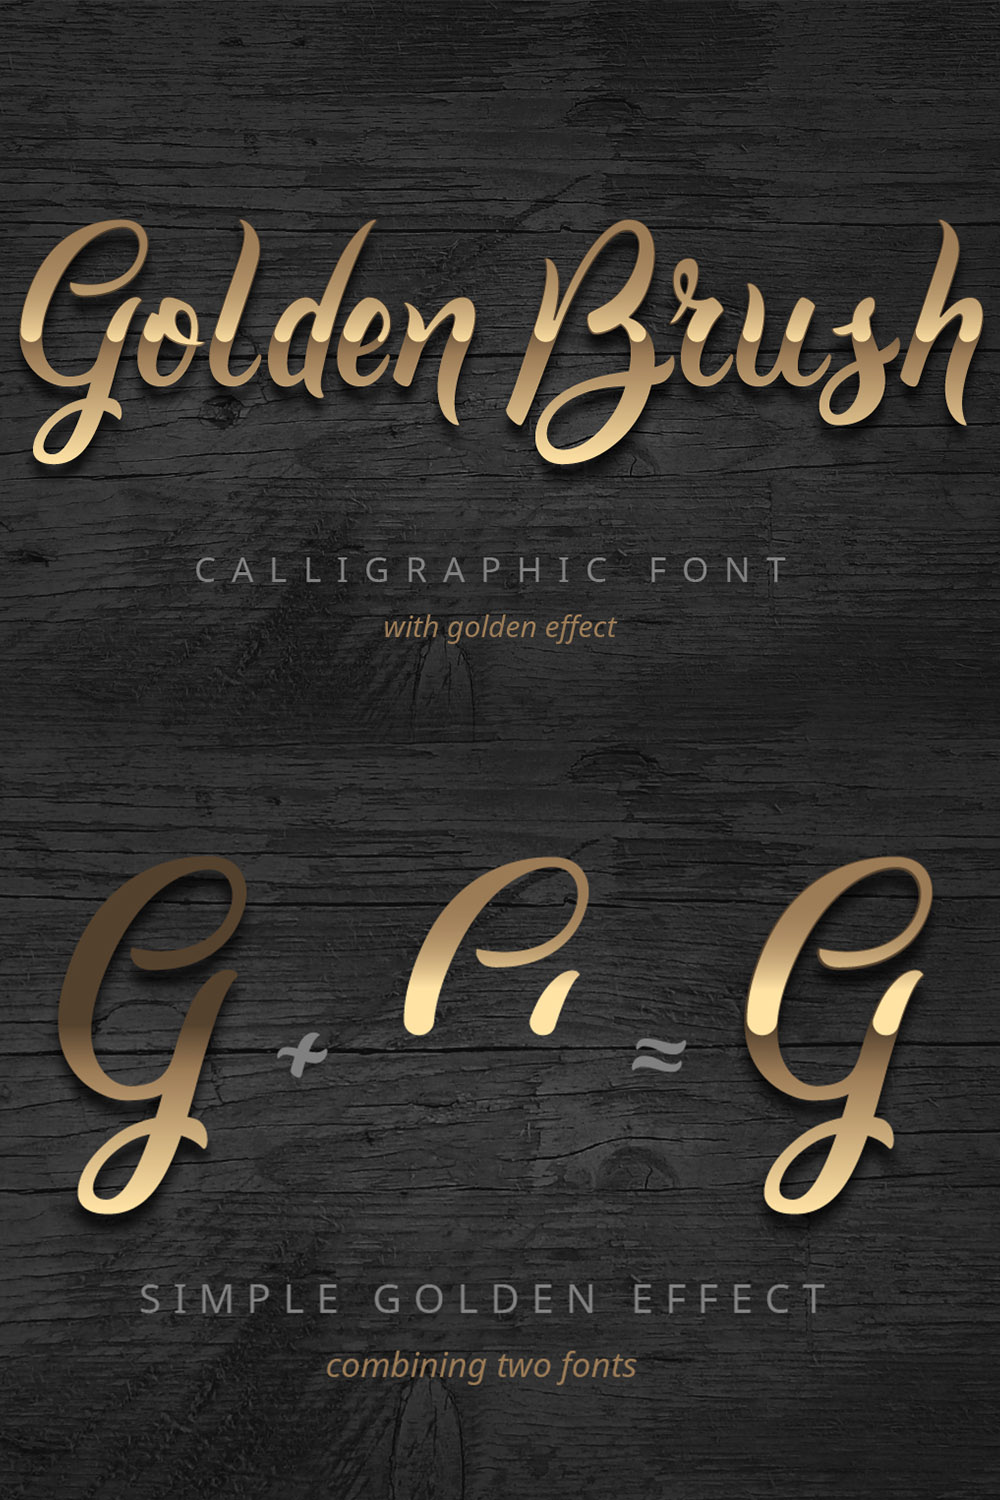 Font Calligraphy Golden Brush Design pinterest image.